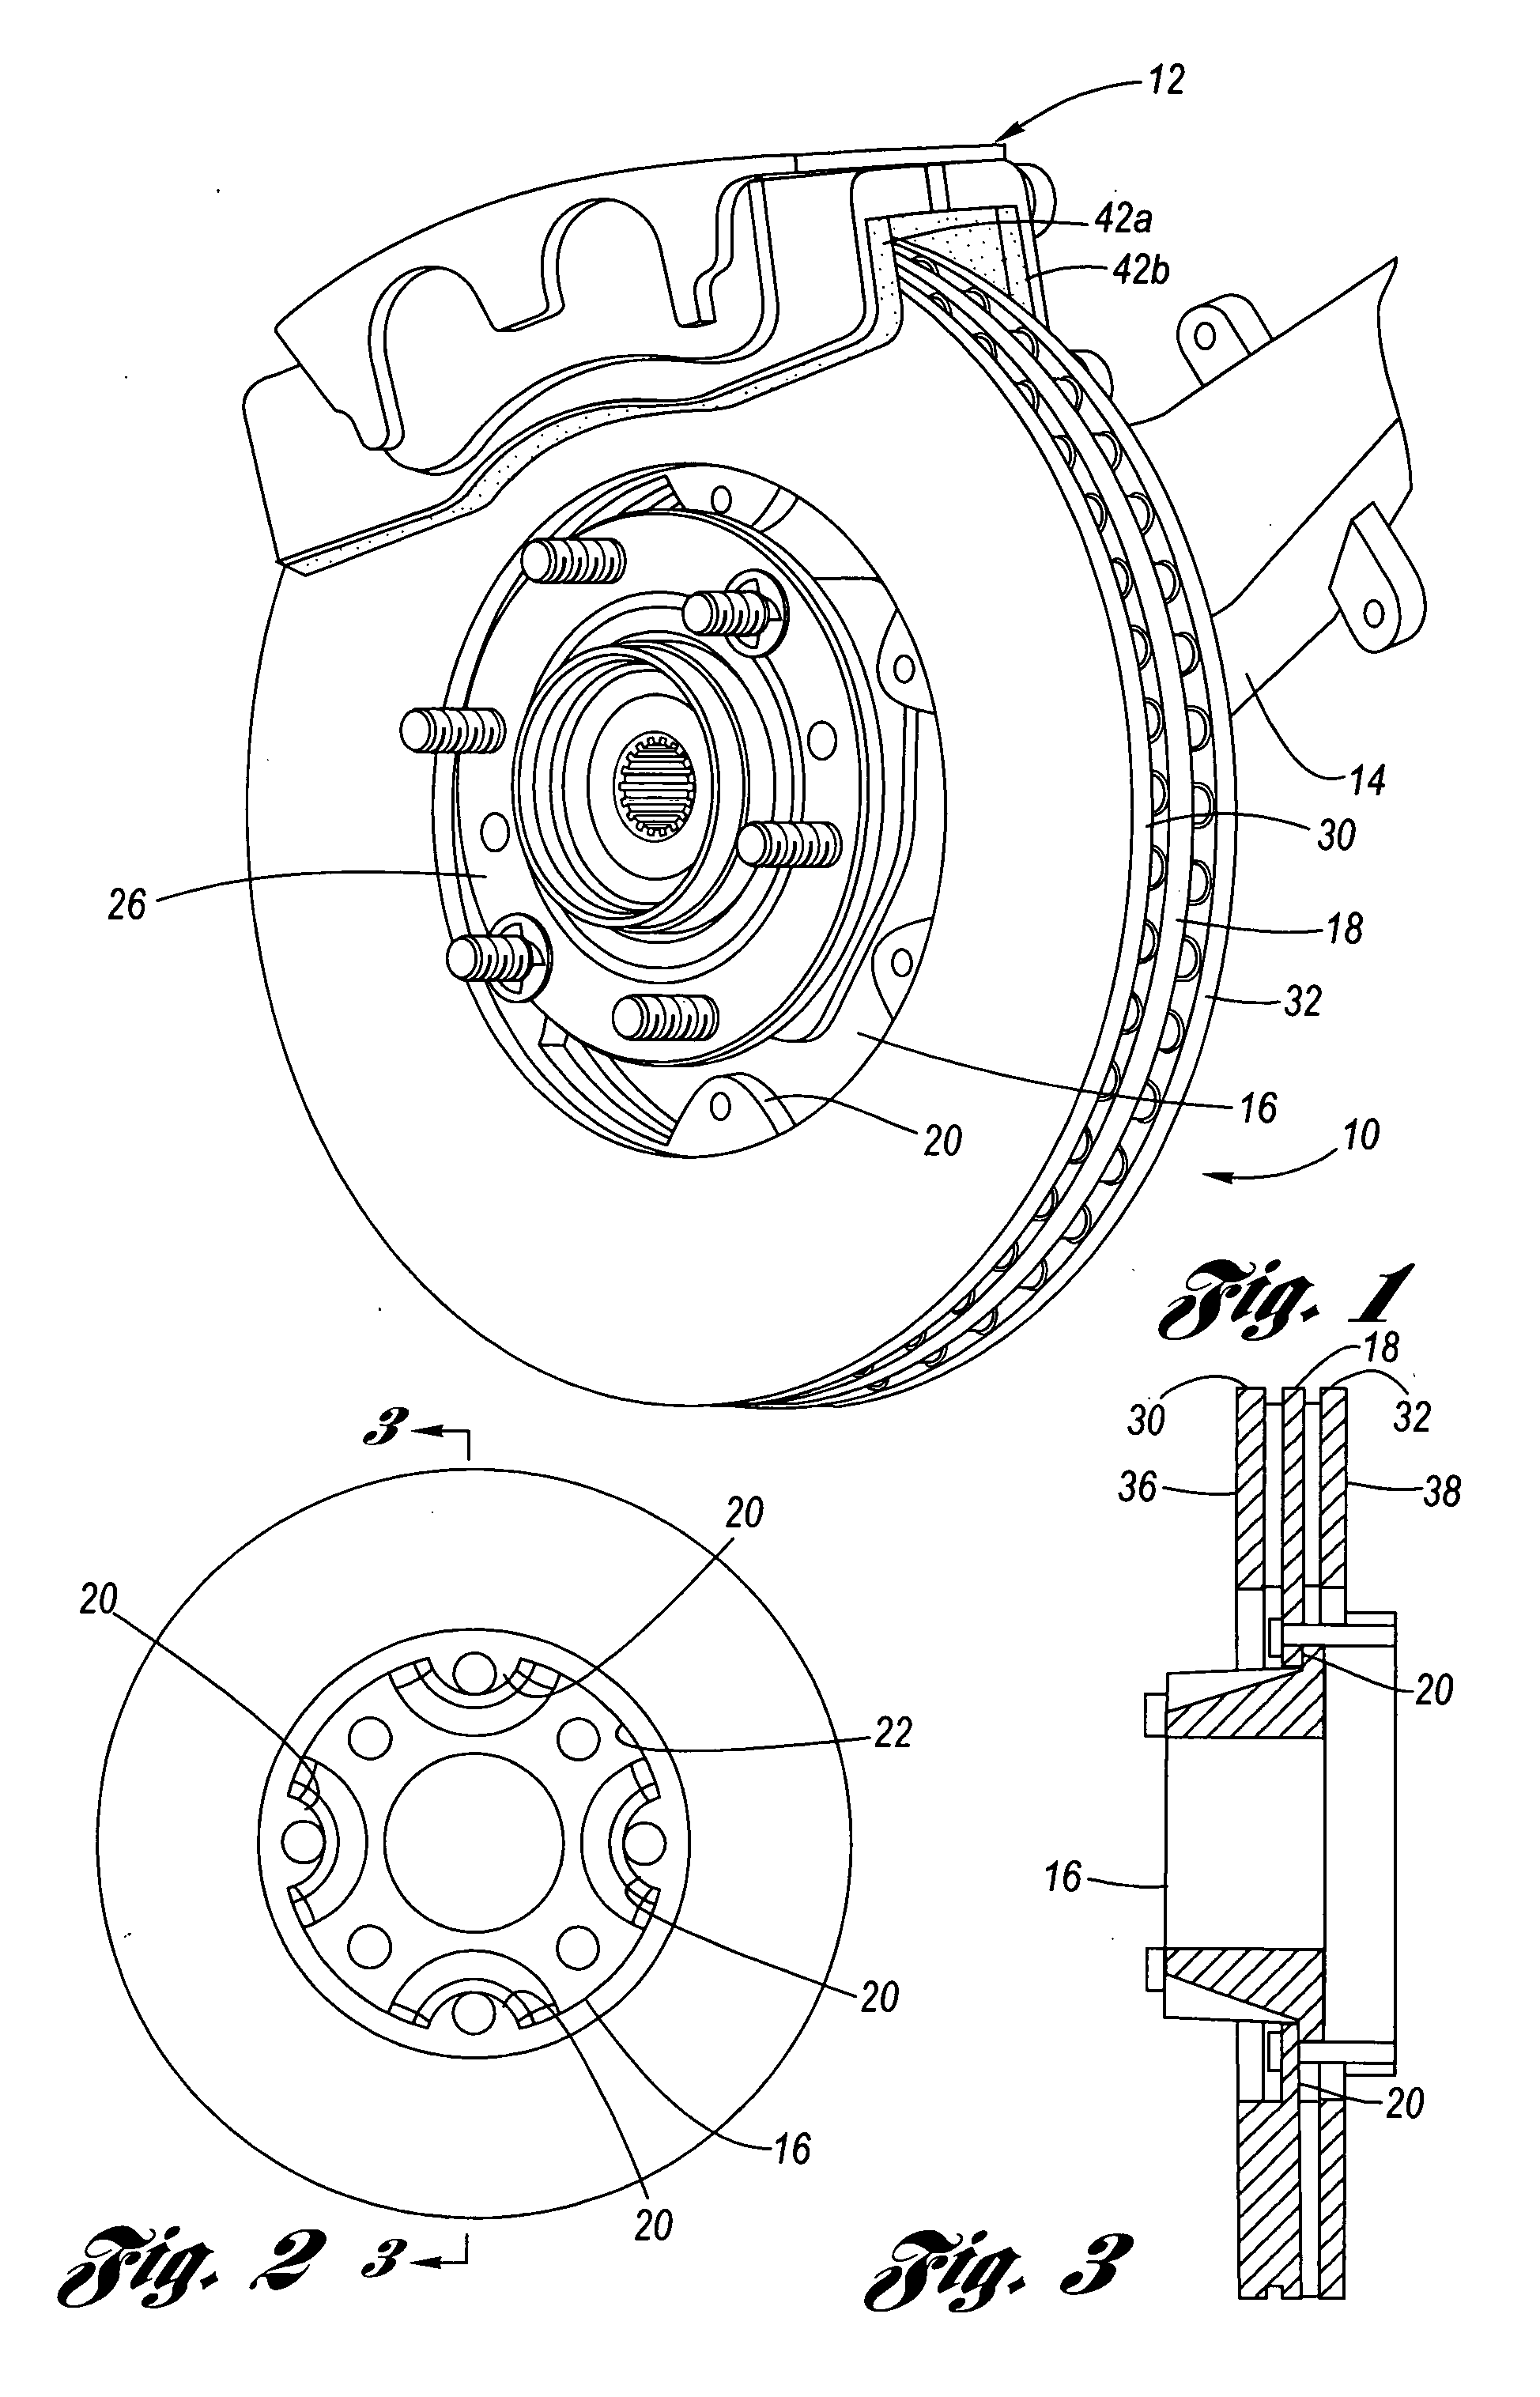 Hatless brake rotor